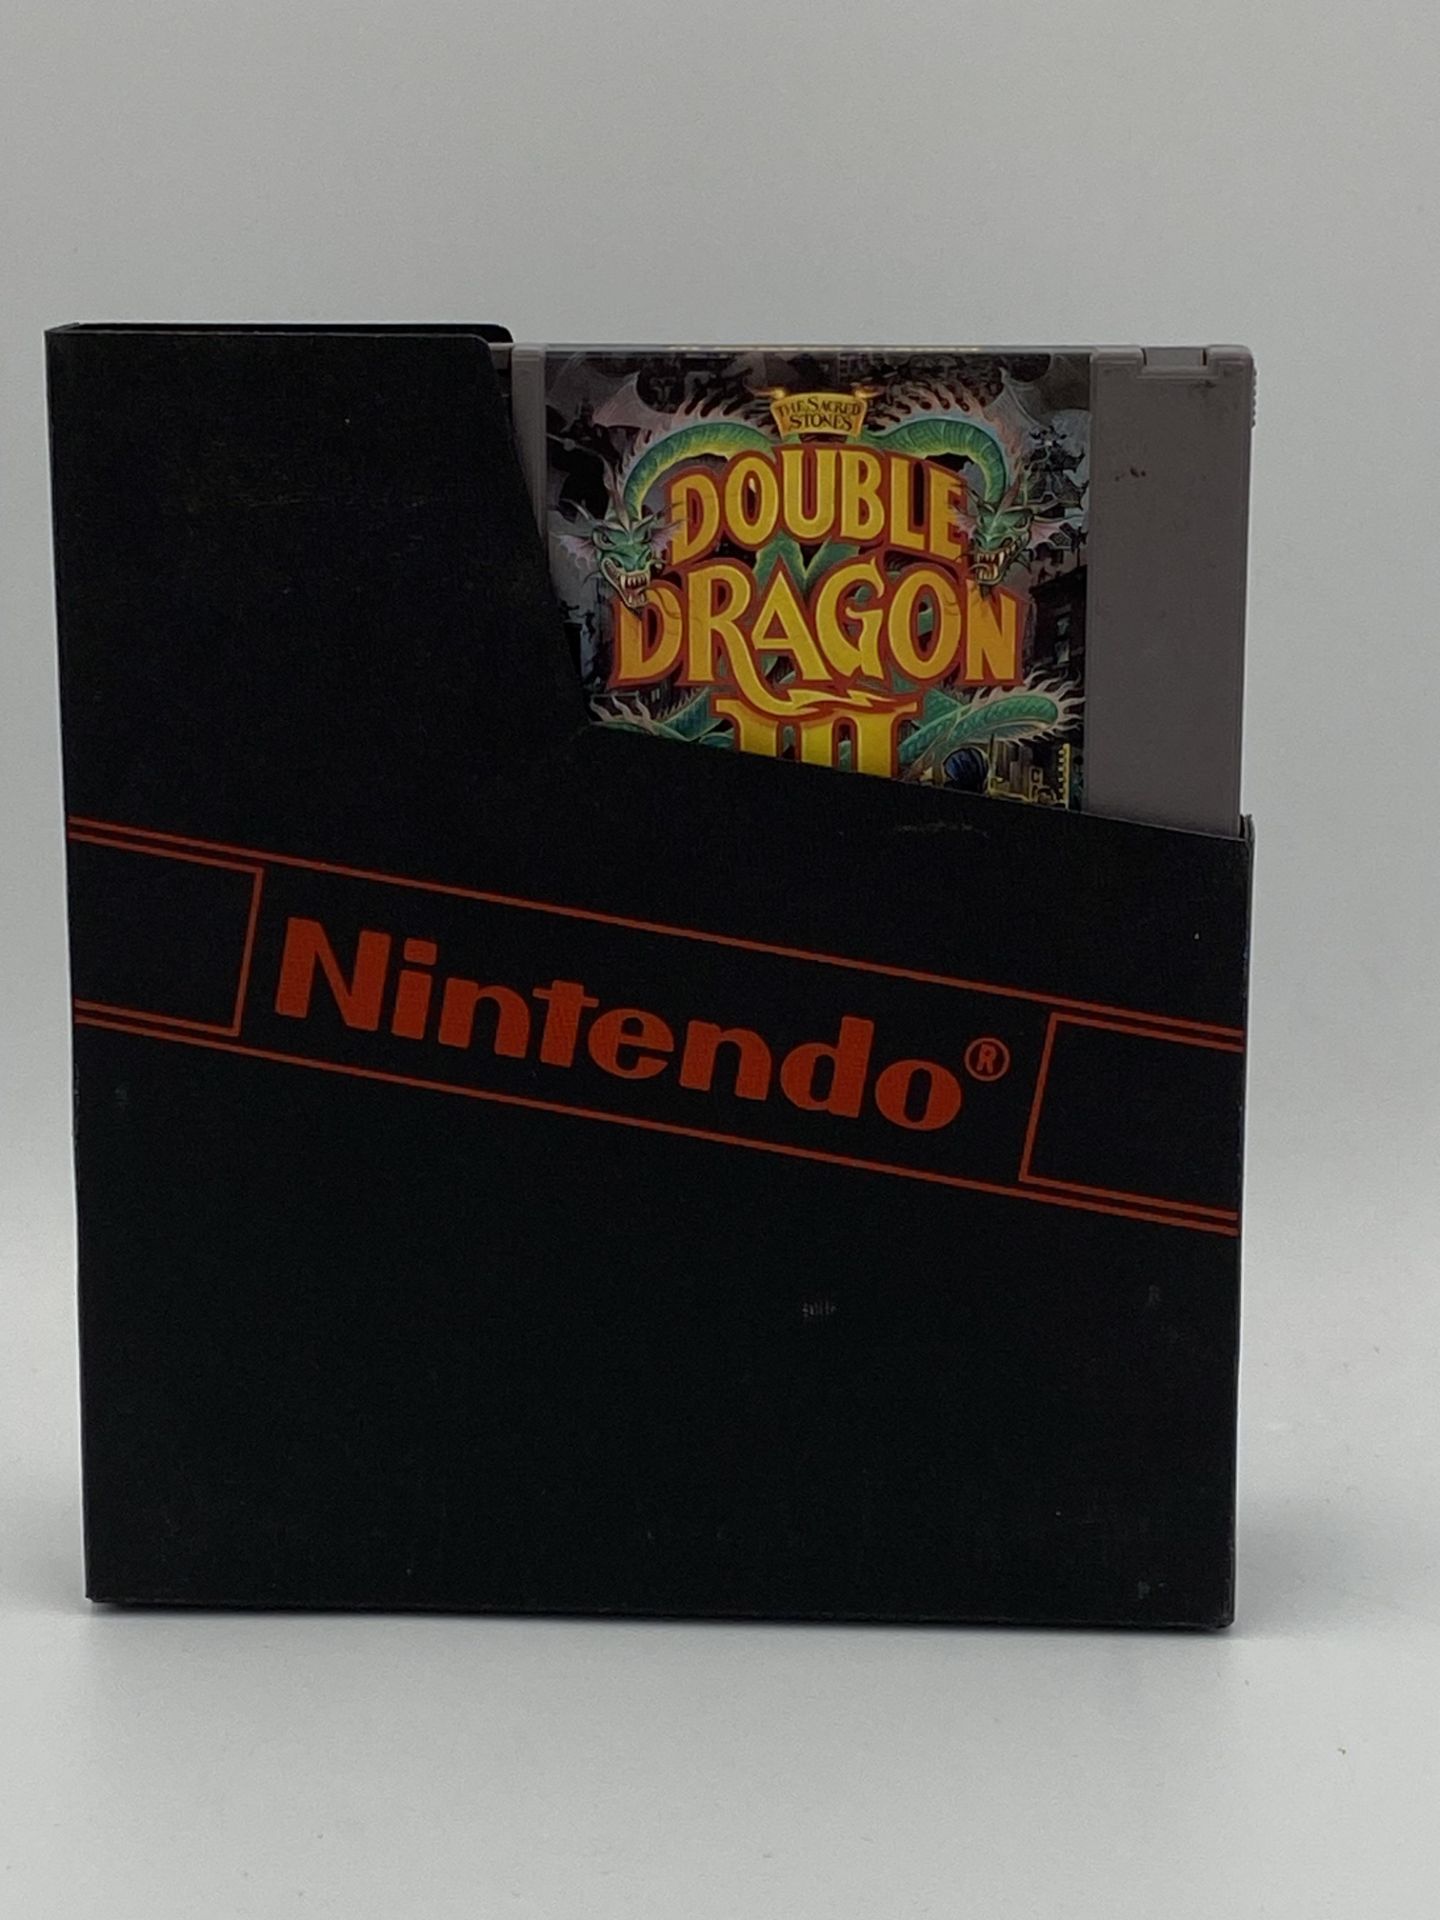 Nintendo NES Double Dragon III cartridge - Image 2 of 2